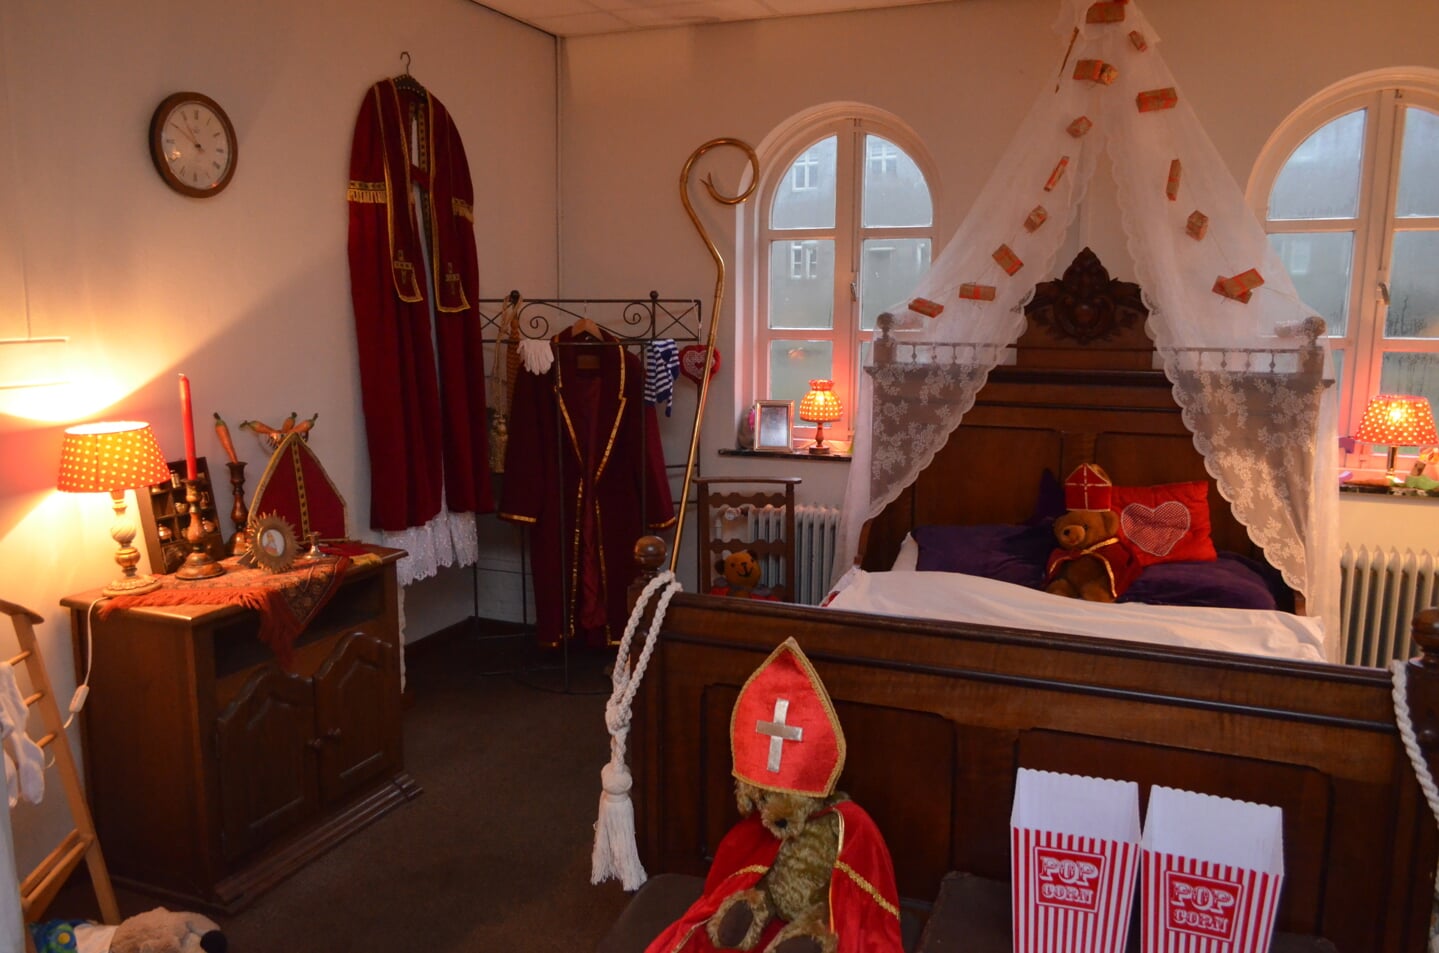 Leerlingen van de Sint-Petrusschool mochten vorige week op bezoek bij Sinterklaas in kasteel Stapelen. Daar kregen ze ook les in pepernoten bakken en cadeautjes in pakken. En natuurlijk een rondleiding door de vertrekken van de goedheiligman zelf.